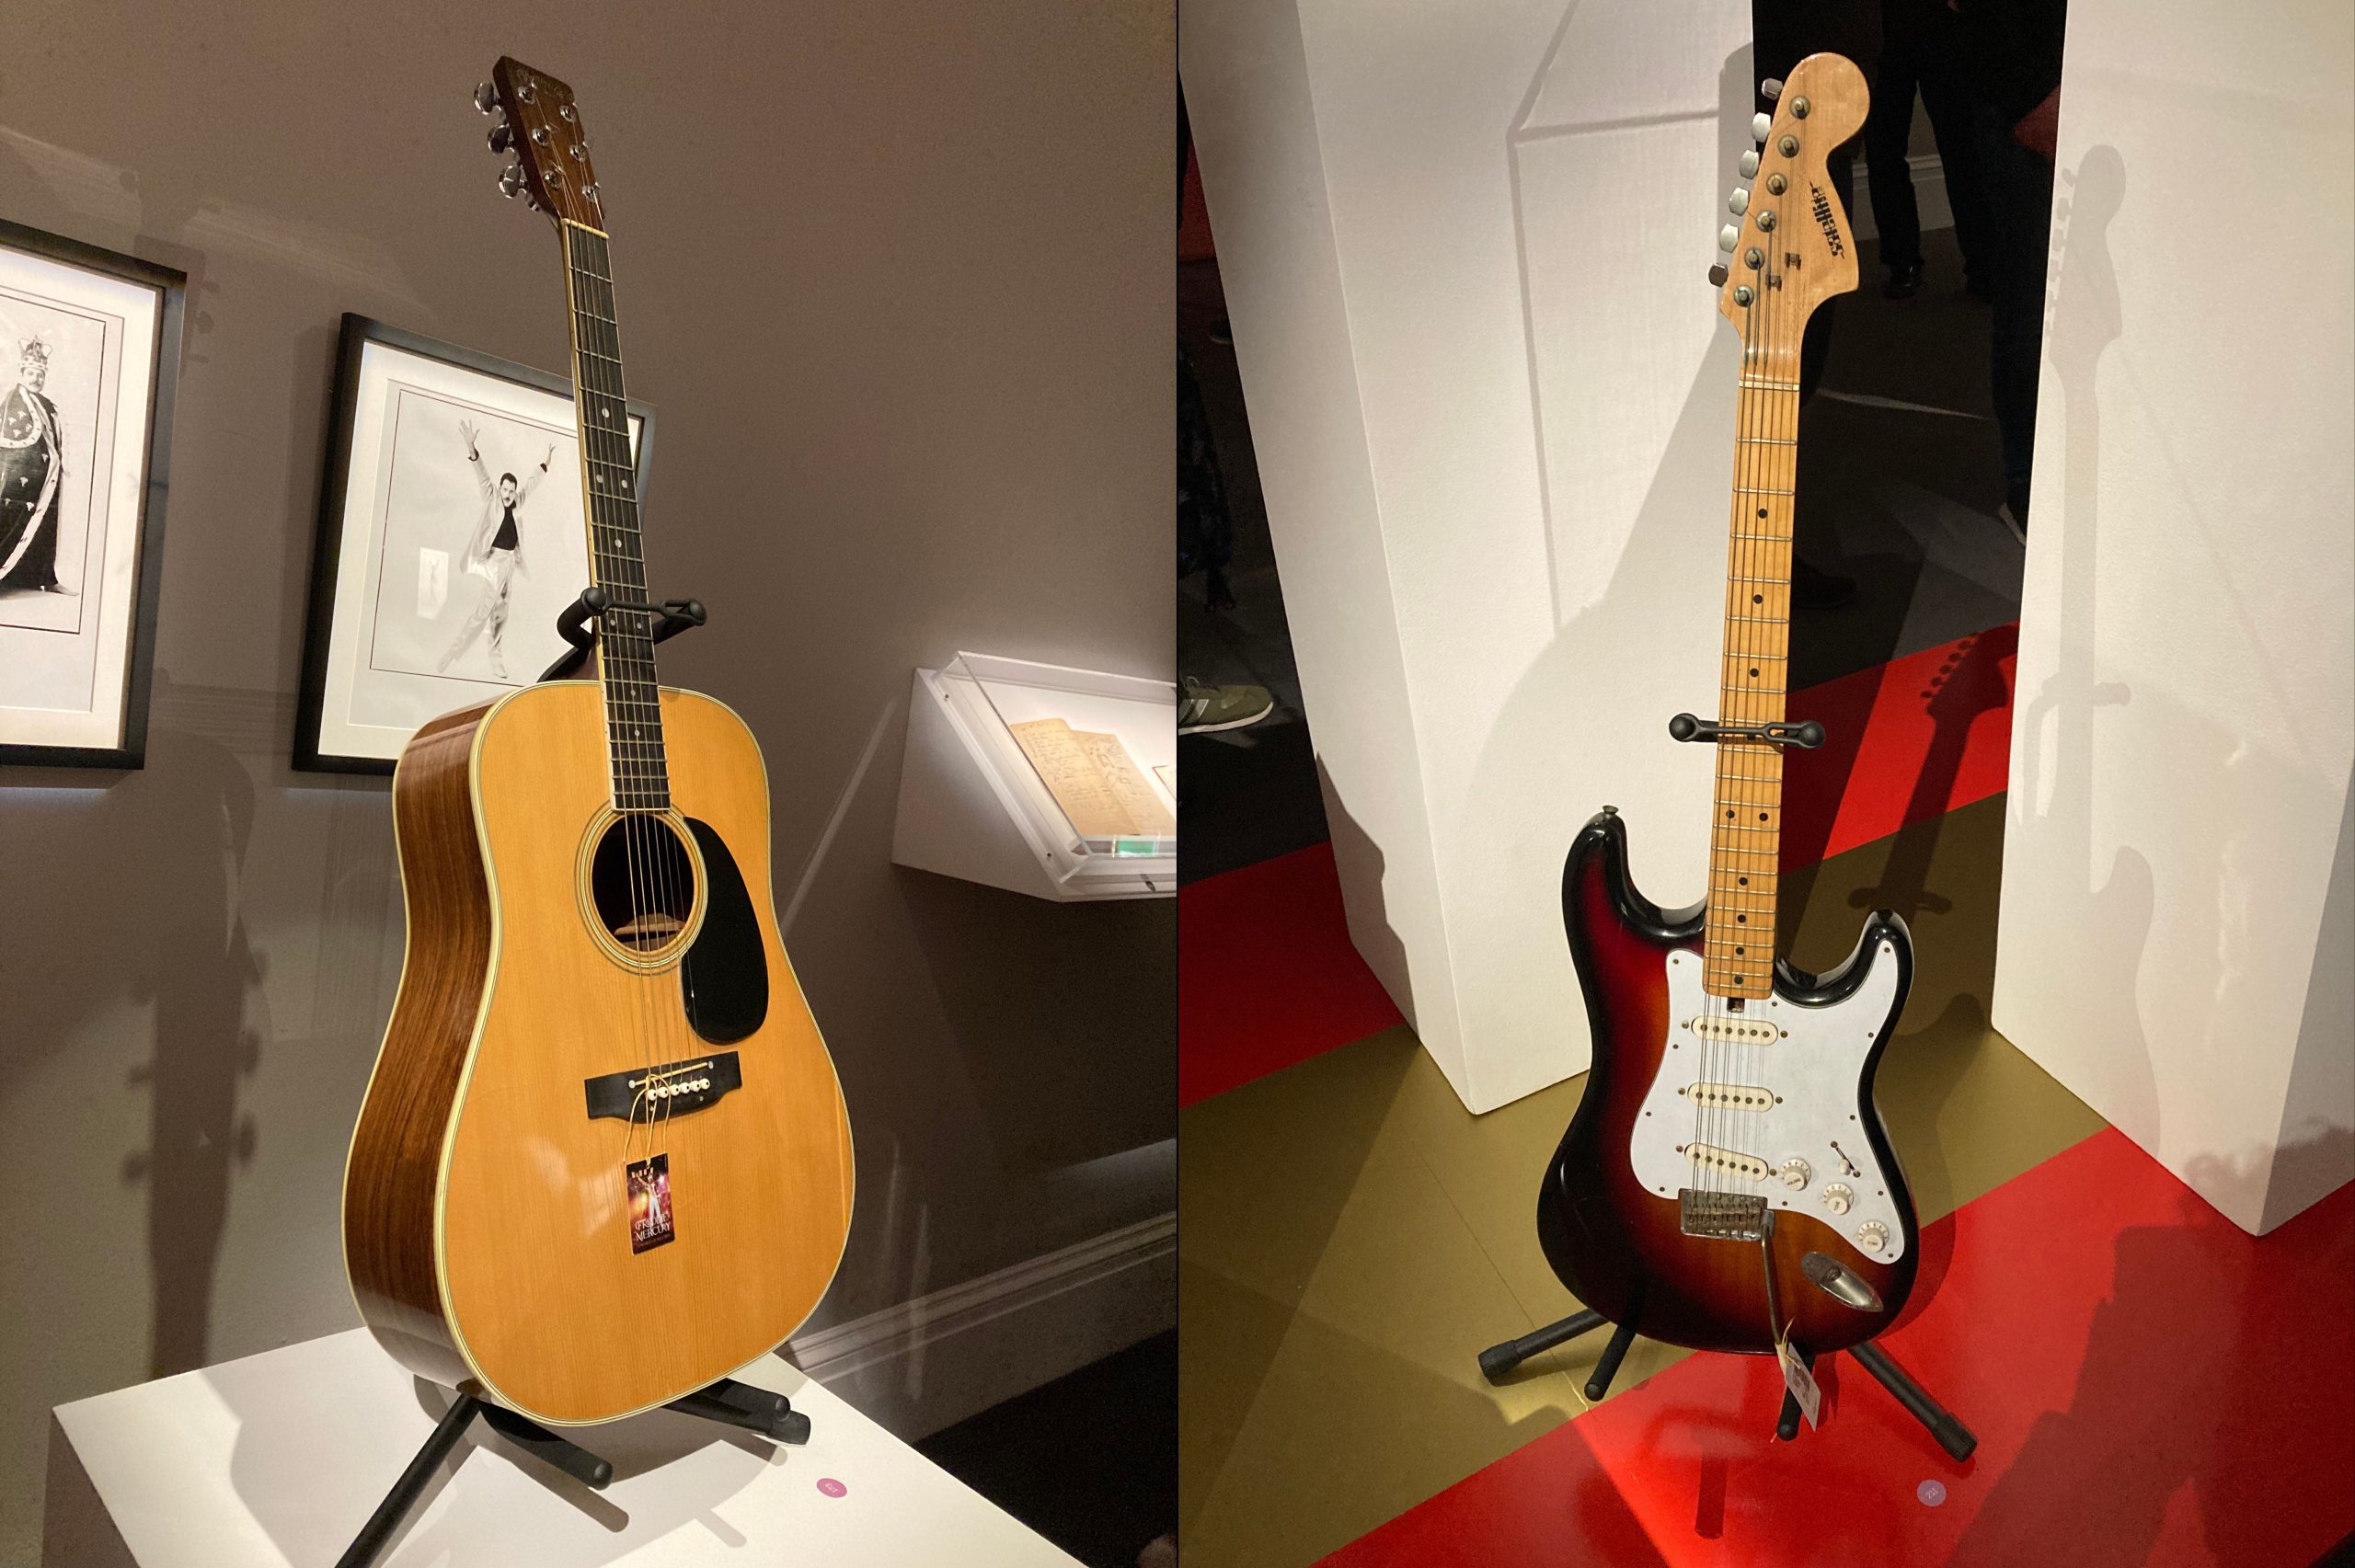 A sinistra c'è una Martin acustica e a destra una chitarra elettrica Satellite, entrambe di proprietà di Freddie Mercury